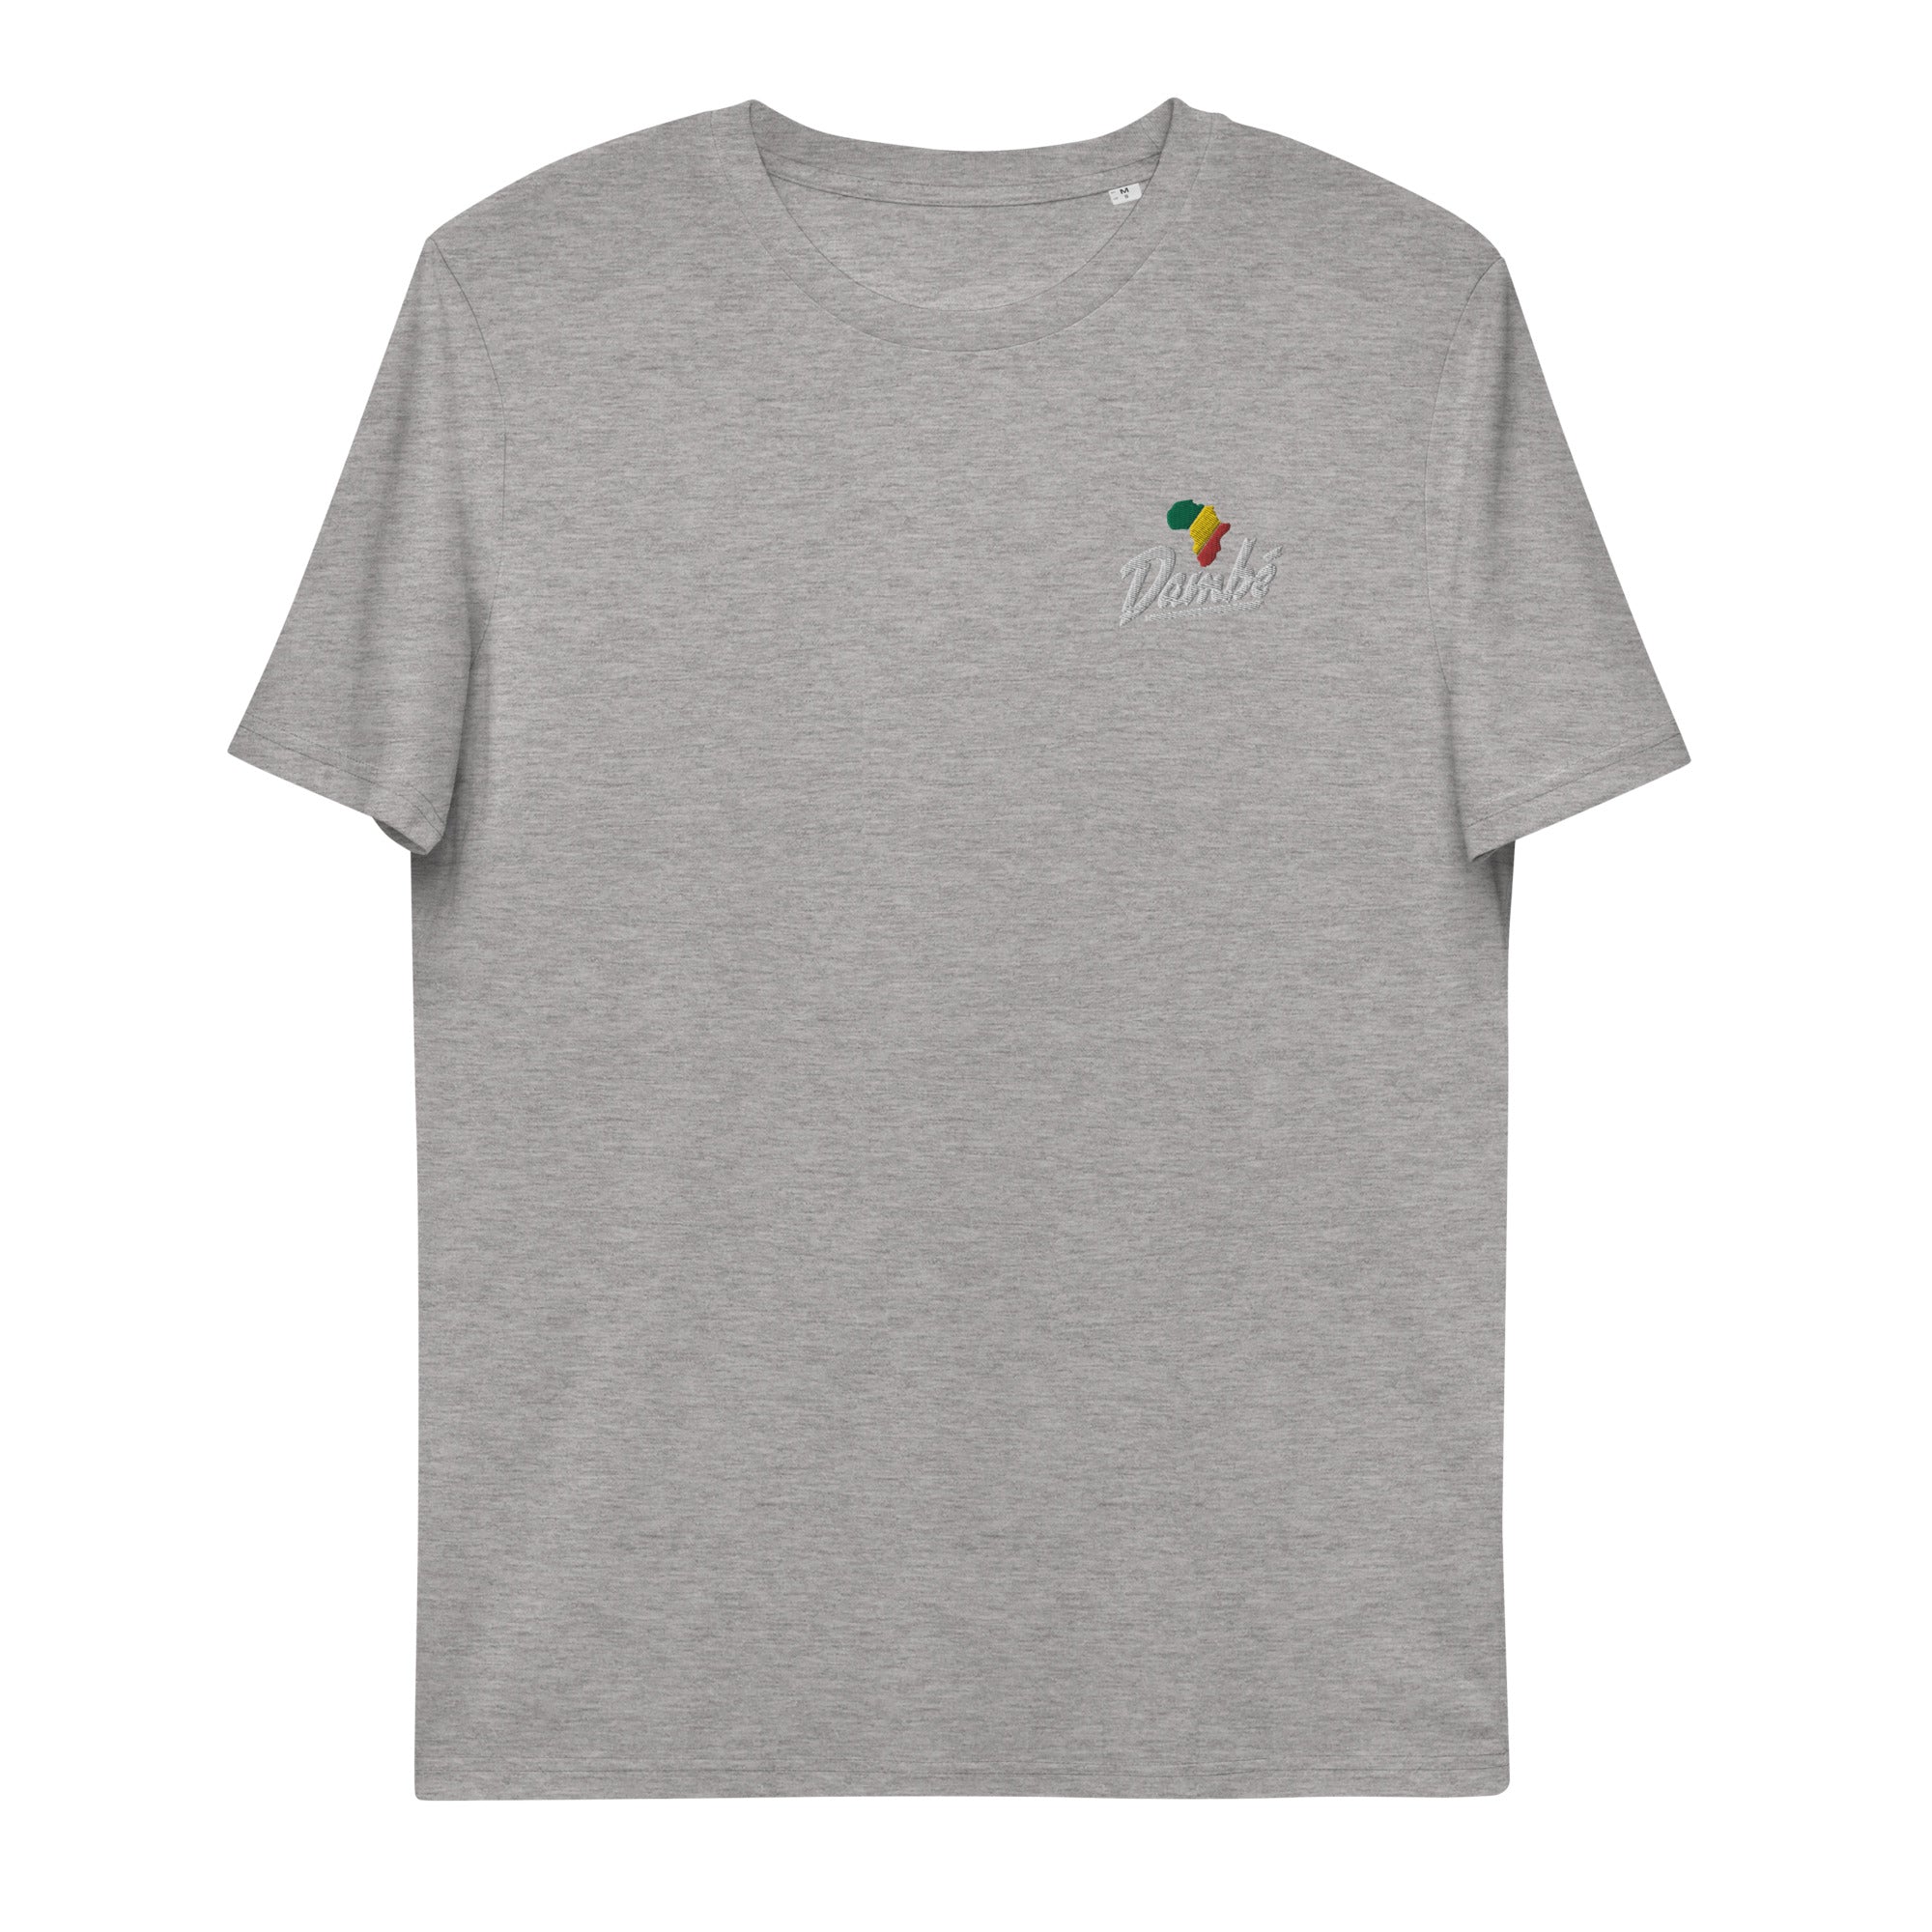 Dambé Africa - T-shirt unisexe en coton biologique